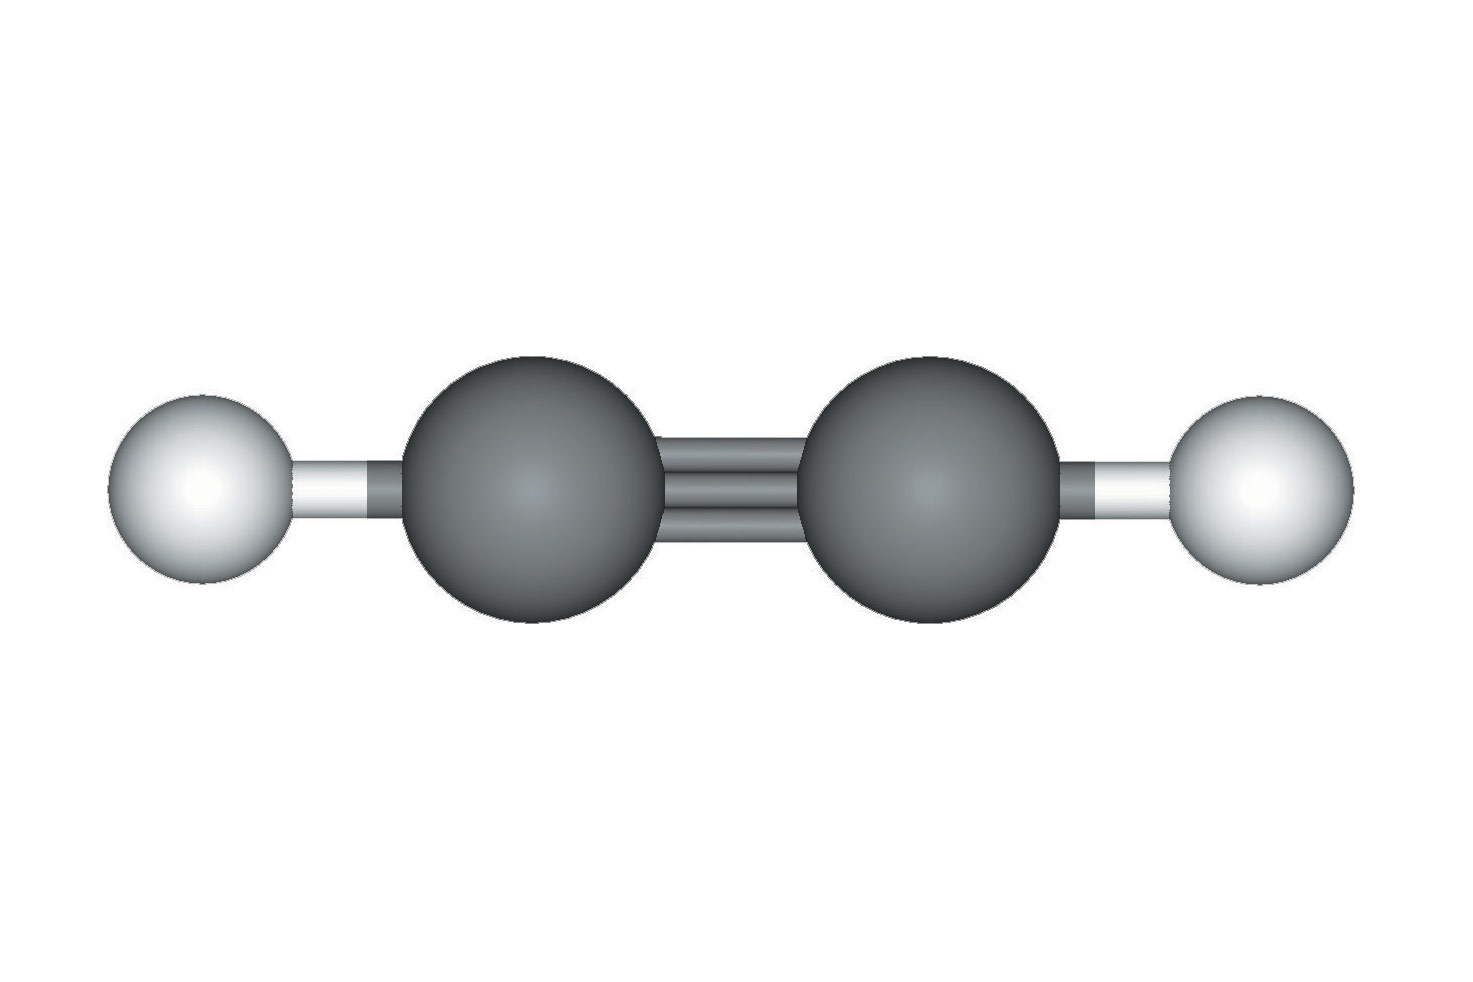 Fotografija prikazuje model molekule etina načinjen od kuglica i štapića. Dva atoma ugljika prikazana su većim tamnim kuglicama i povezana trostrukom vezom, odnosno s tri štapića. Svaki atom ugljika jednostrukom je vezom povezan s po jednim atomom vodika koji su prikazani manjim svijetlim kuglicama.